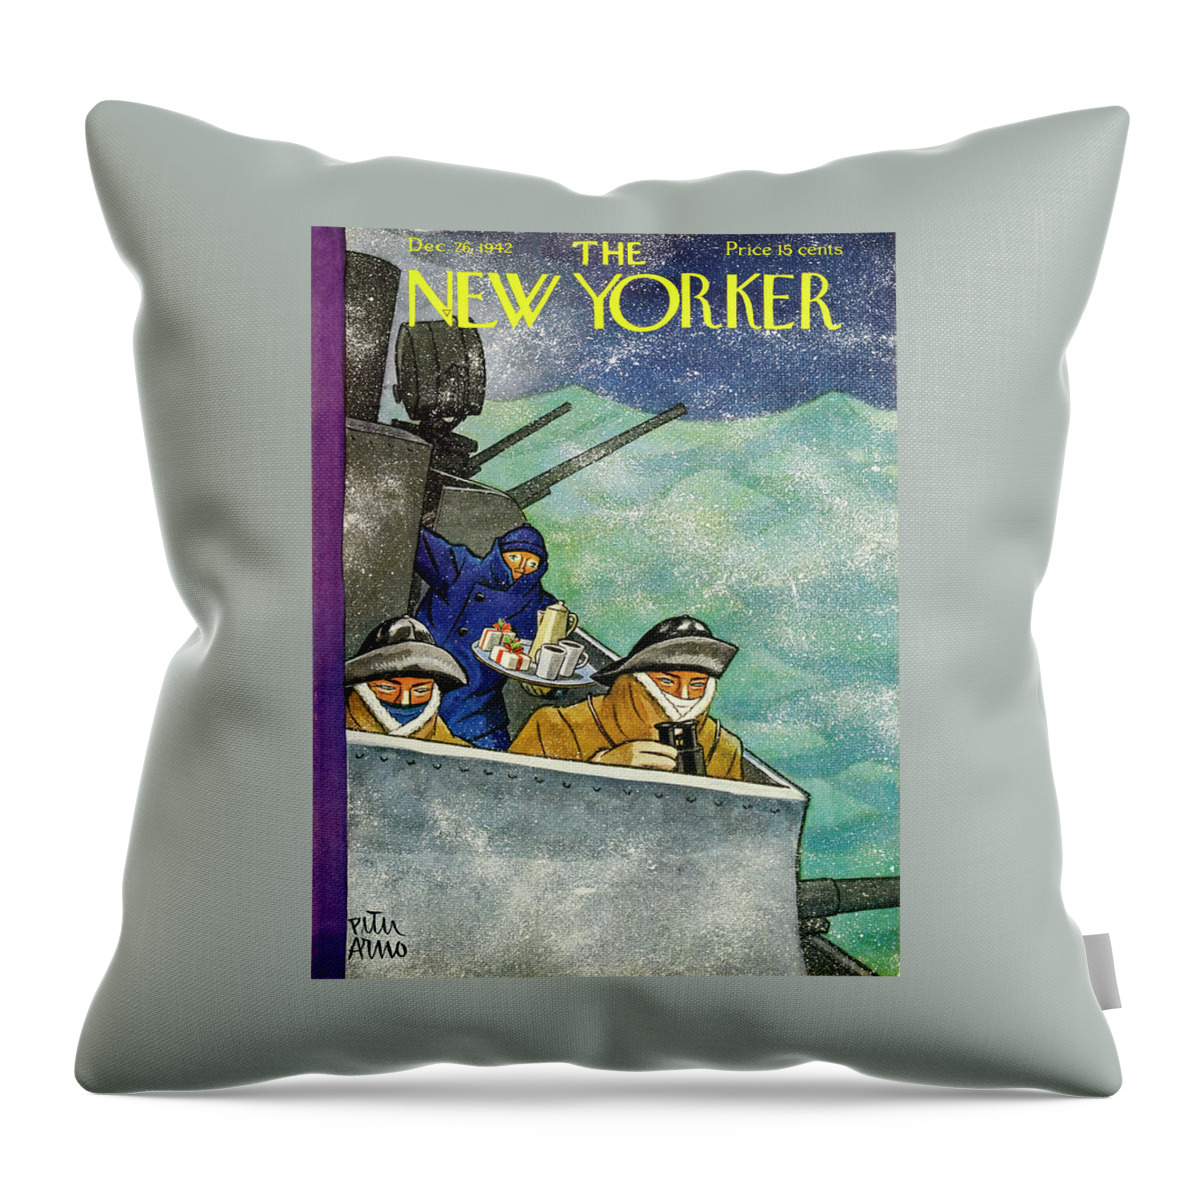 New Yorker December 26, 1942 Throw Pillow